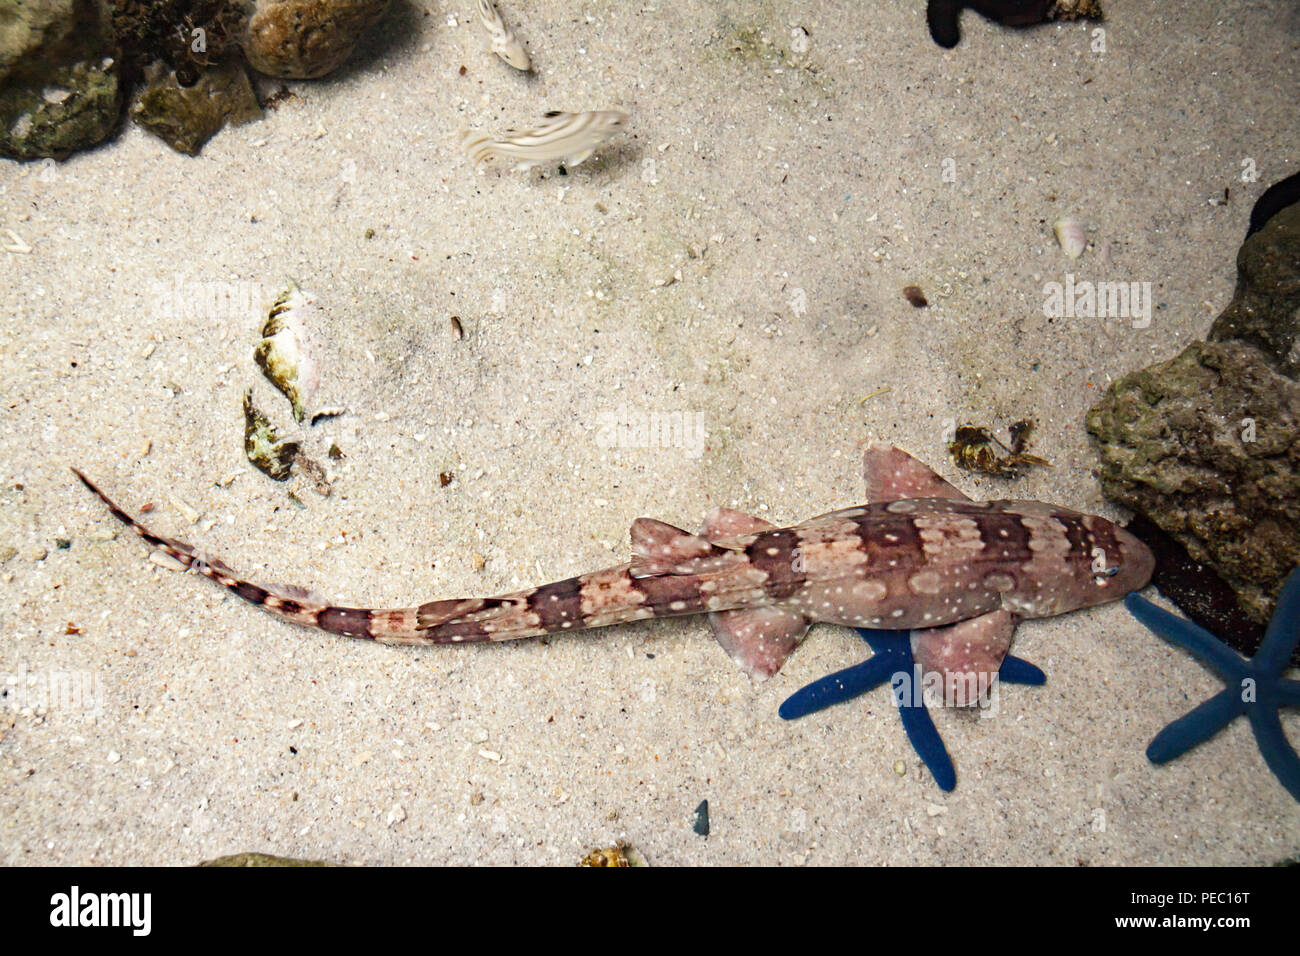 A whitespotted catshark or bamboo shark, Chiloscyllium plagiosum, Philippines. Stock Photo